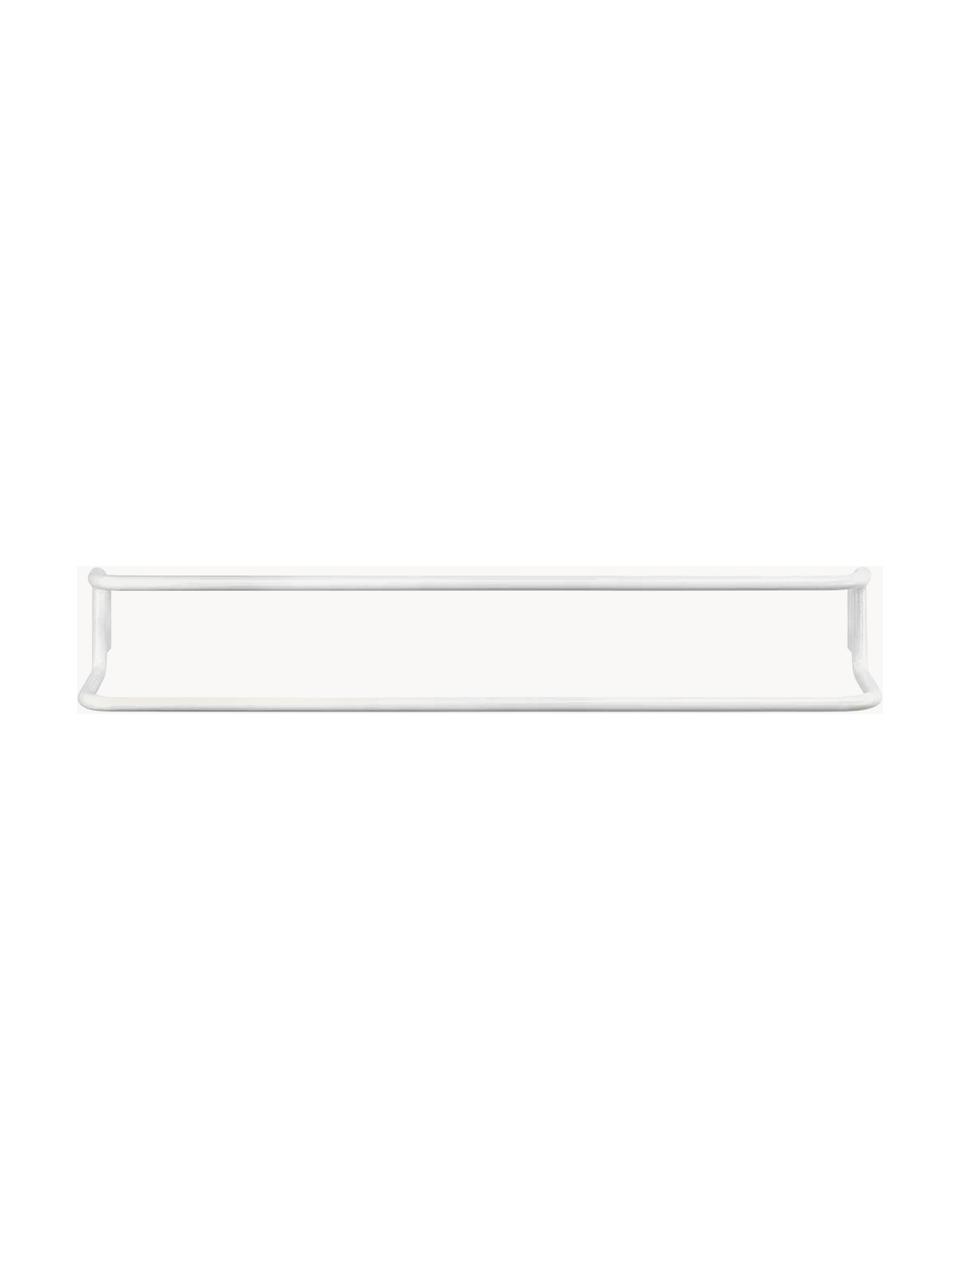 Handtuchhalter Modo, Edelstahl, beschichtet, Weiß, B 60 x H 9 cm